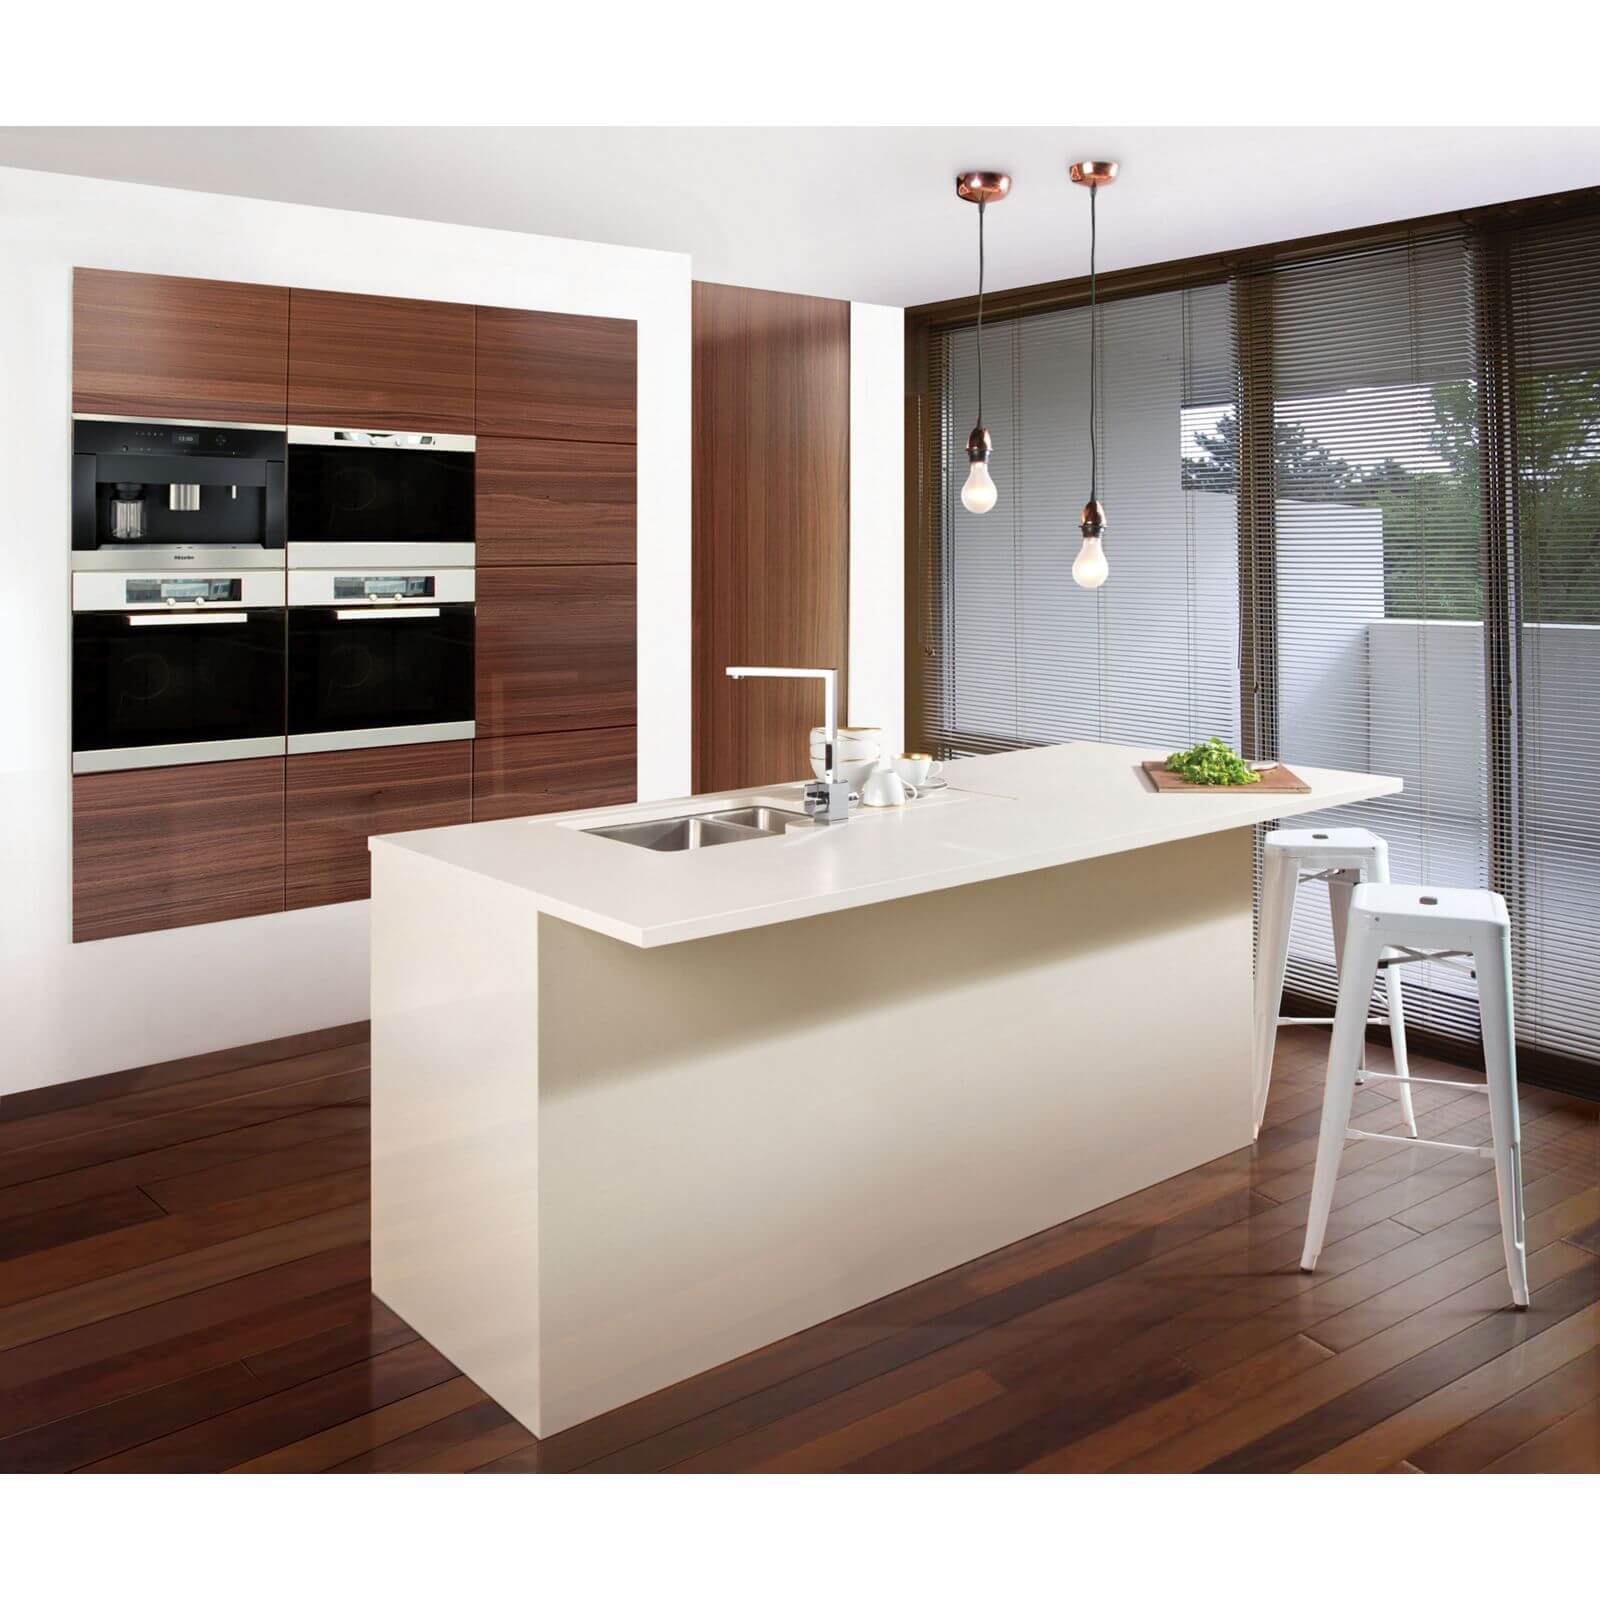 Maia Fossil Kitchen Sink Worktop - 1.5 Designer Right Hand Bowl - 3600 x 650 x 28mm